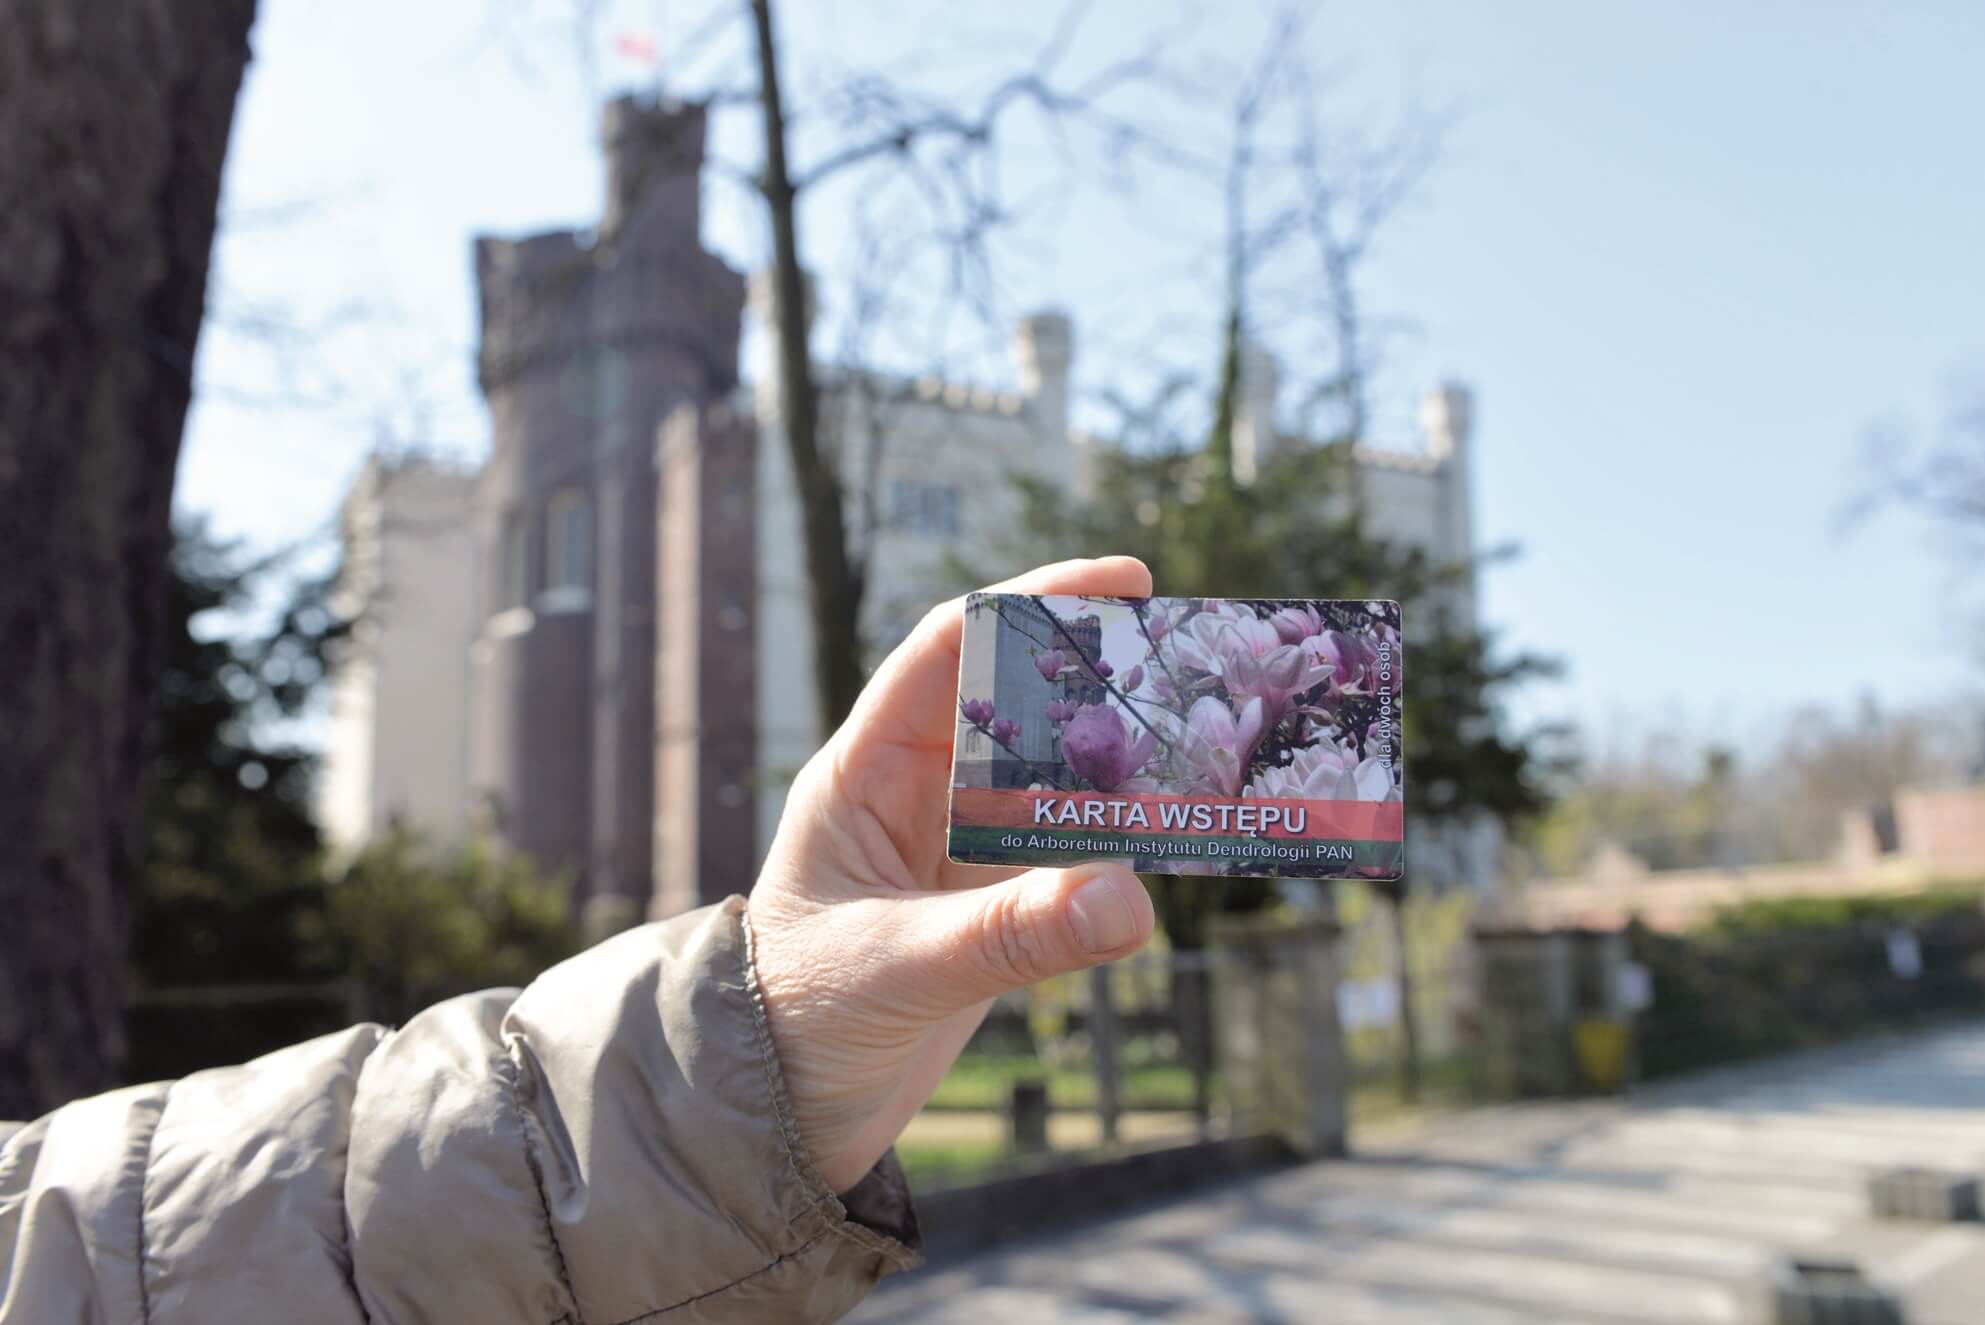 Karta wstępu do Arboretum trzymana w ręce na tle zamku